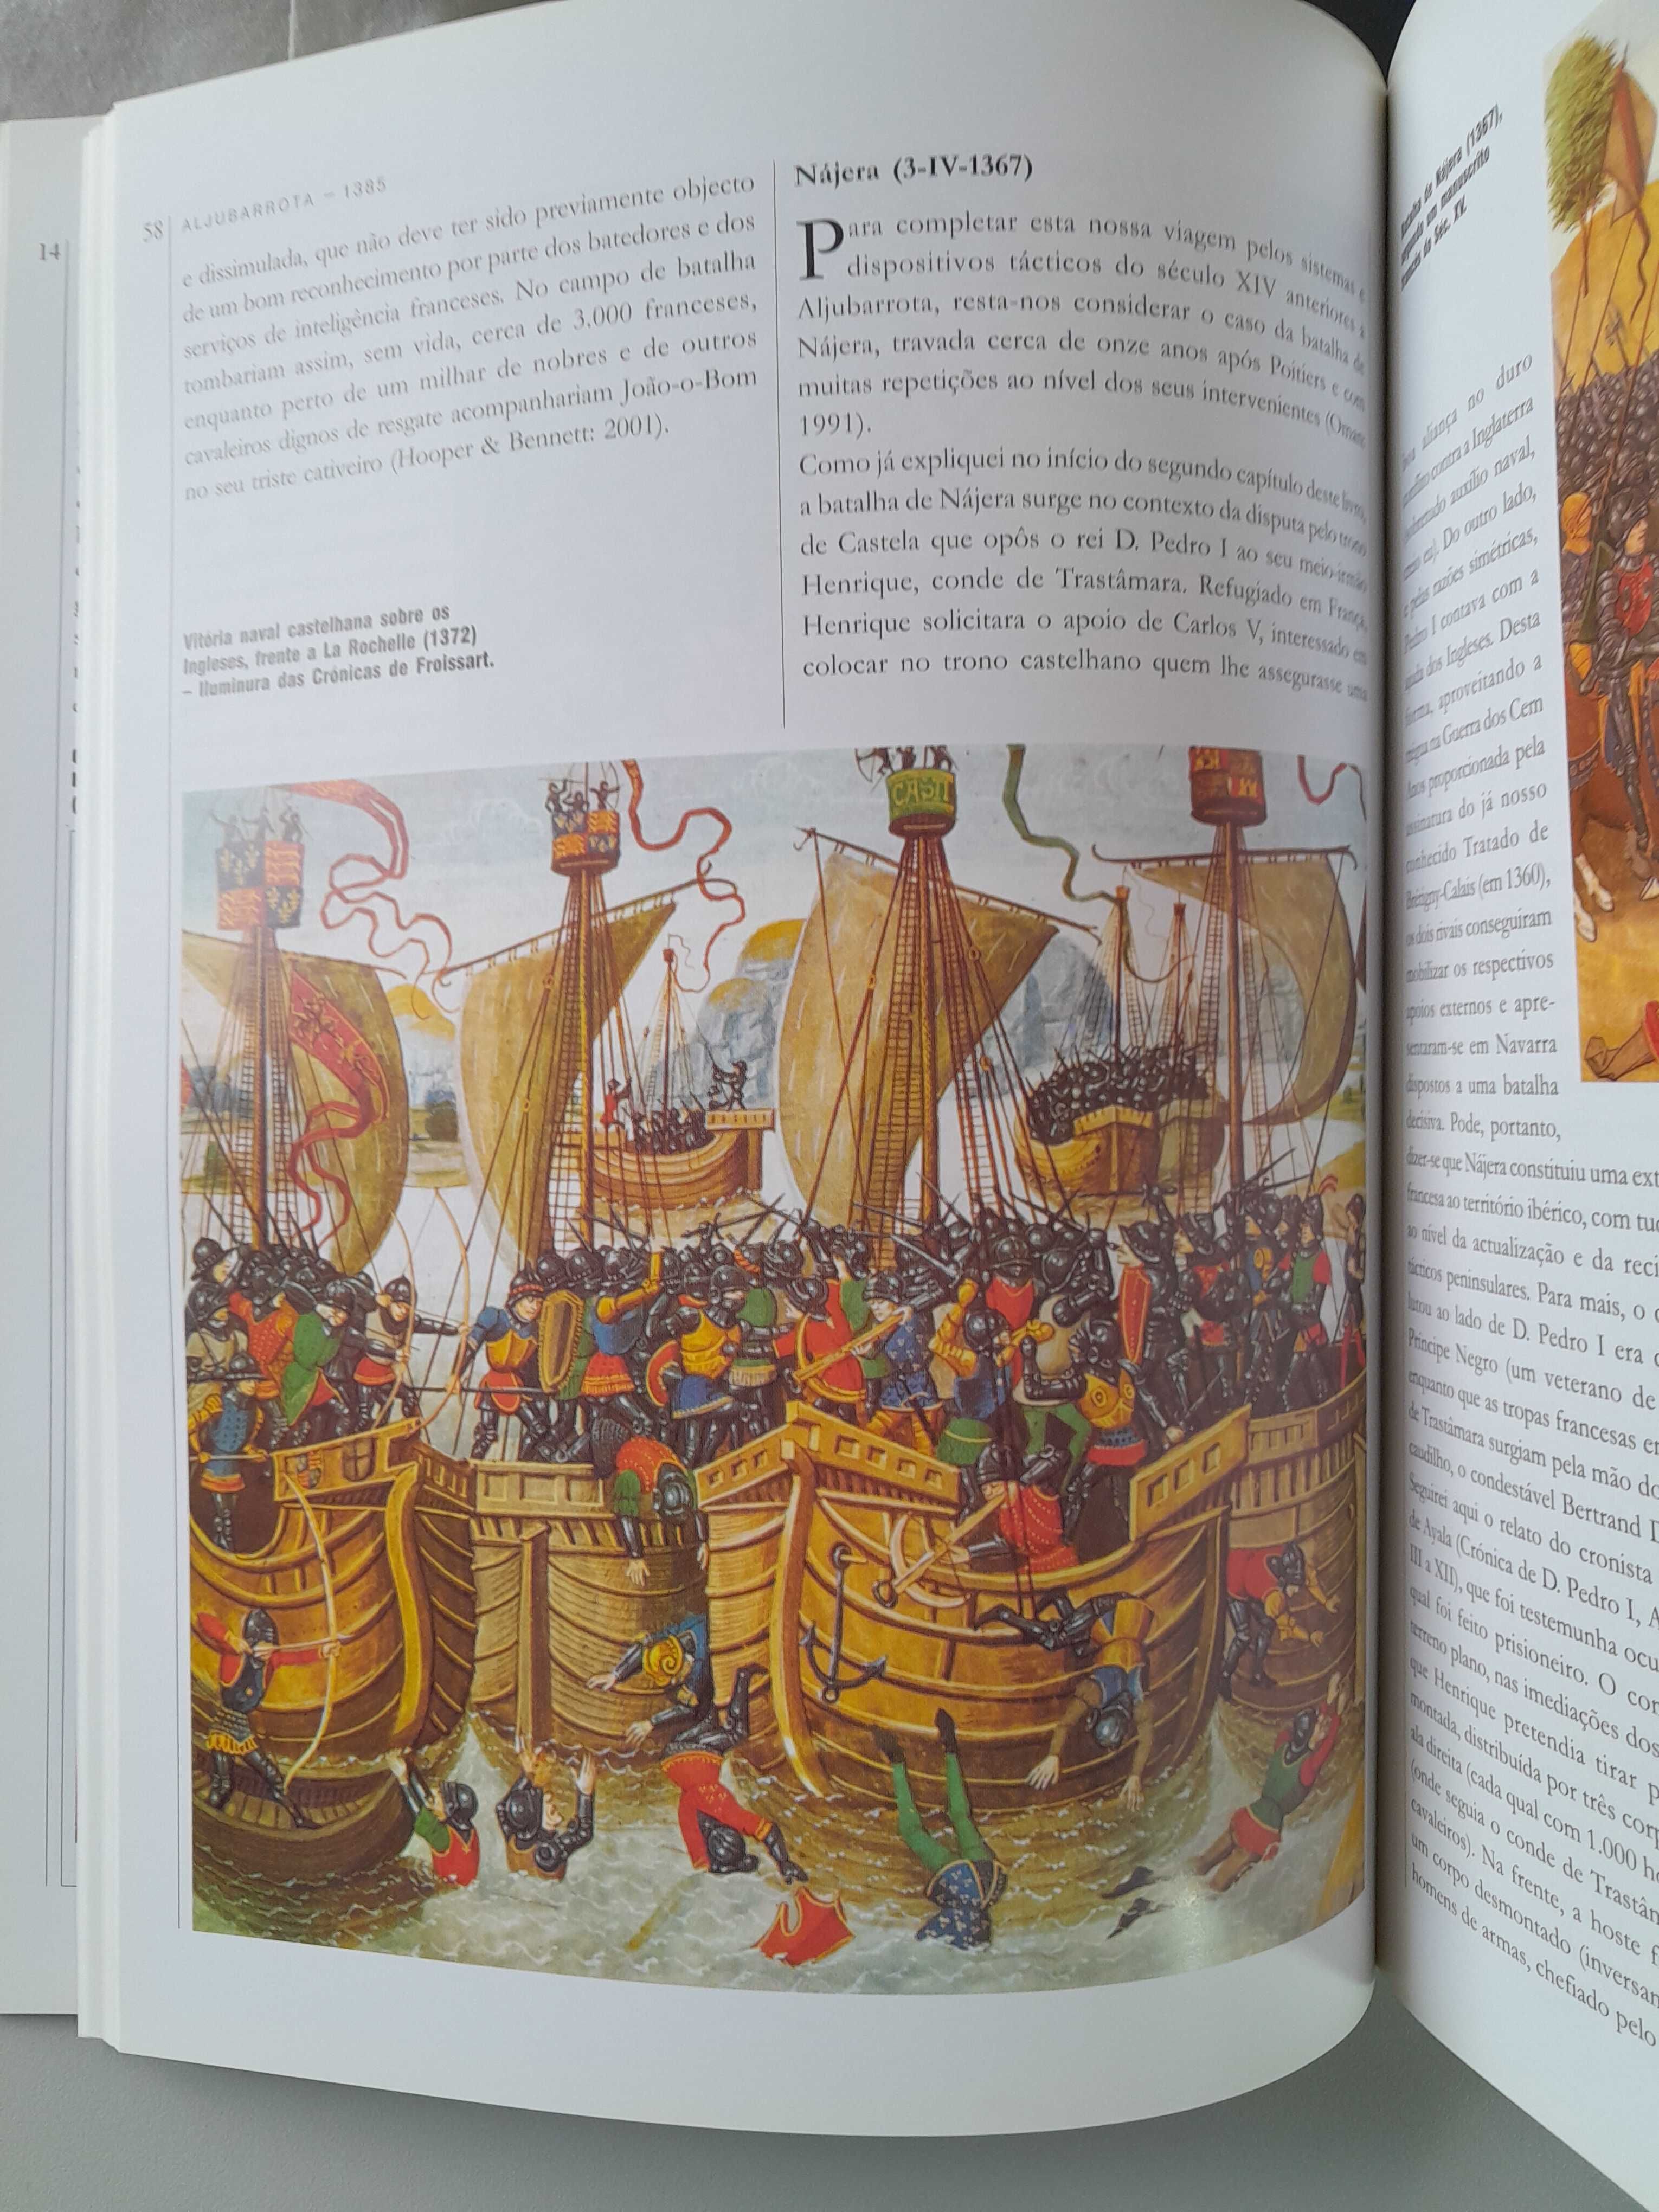 Livro "Aljubarrota 1385 A Batalha Real" , de João Gouveia Monteiro.